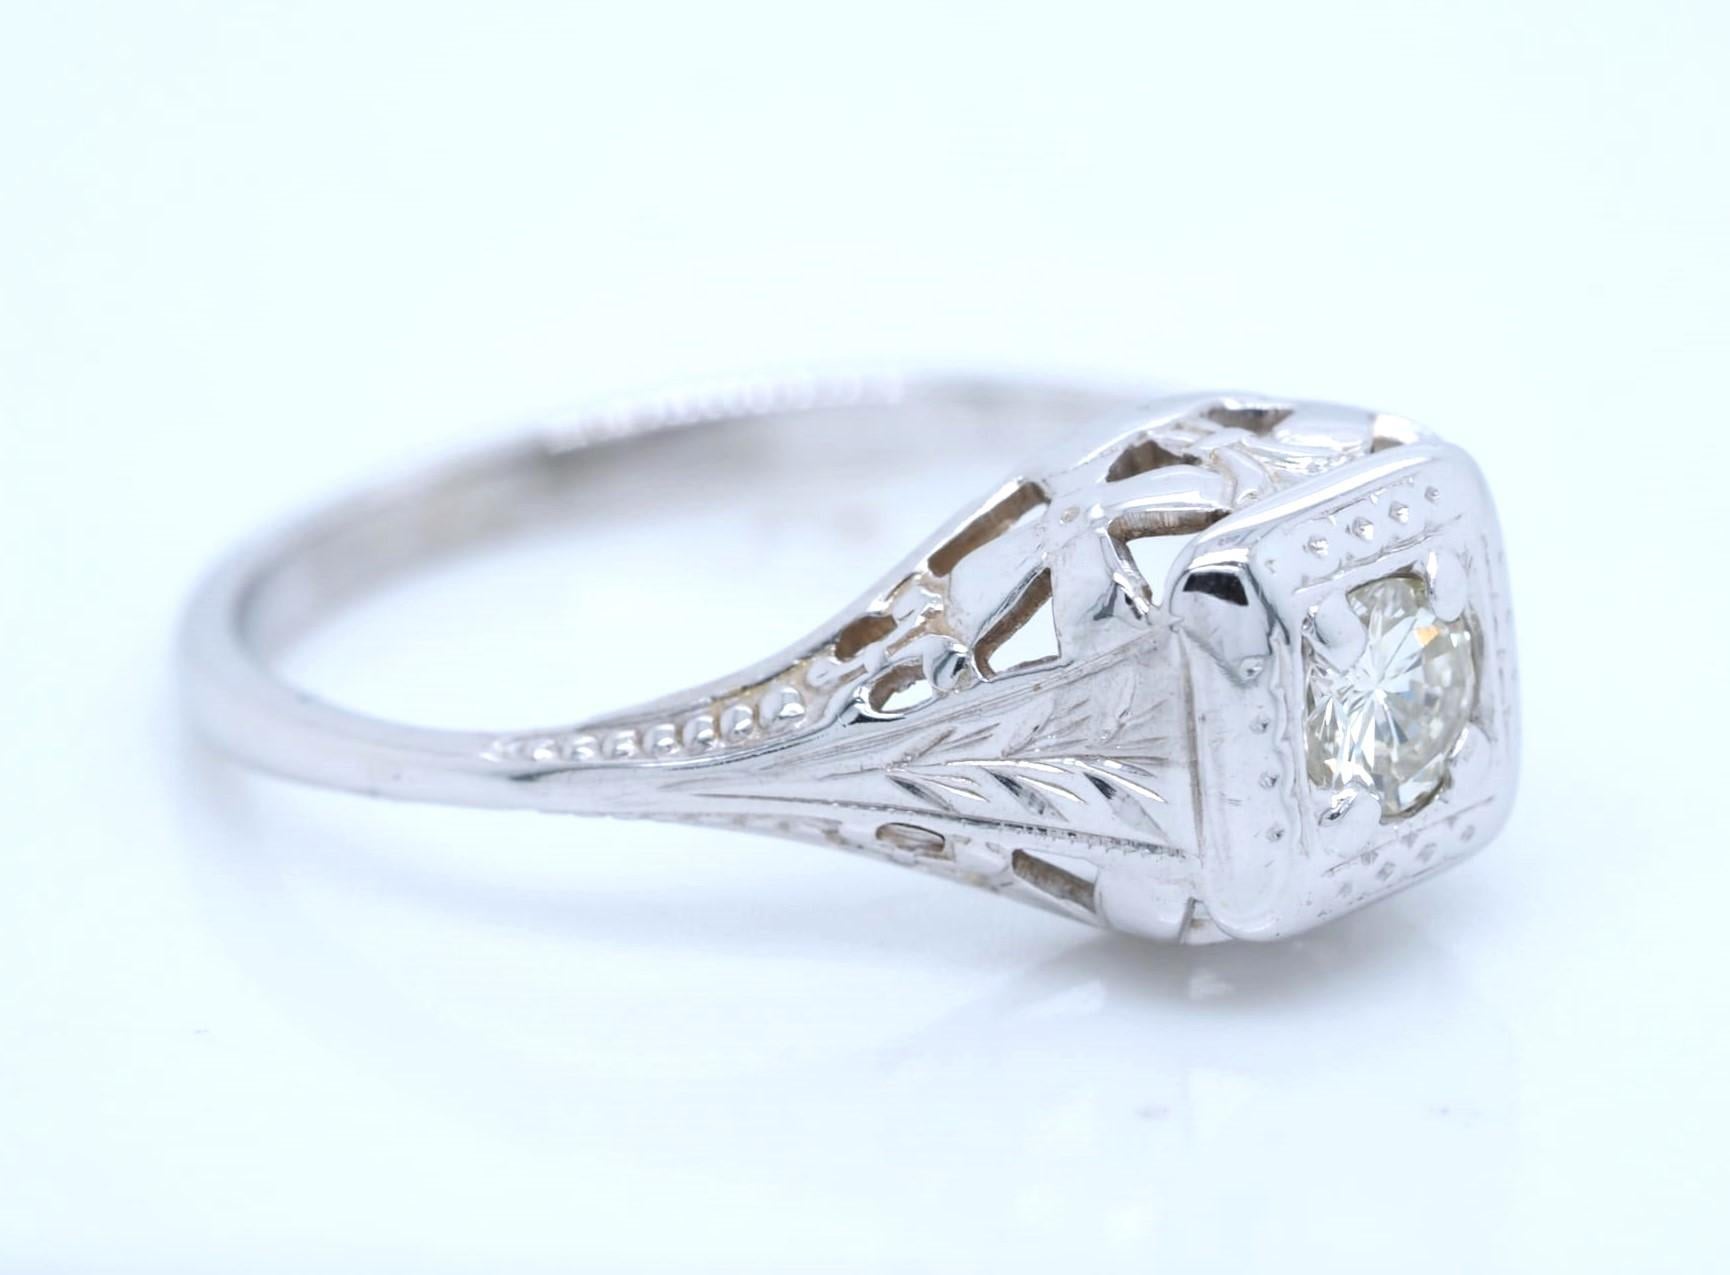 Cette bague de fiançailles vintage est fabriquée en or blanc 14 carats et présente un magnifique diamant naturel de taille ronde de 0,25 ct. Le style de la monture à tenons met en valeur la beauté du diamant, tandis que le degré de pureté légèrement